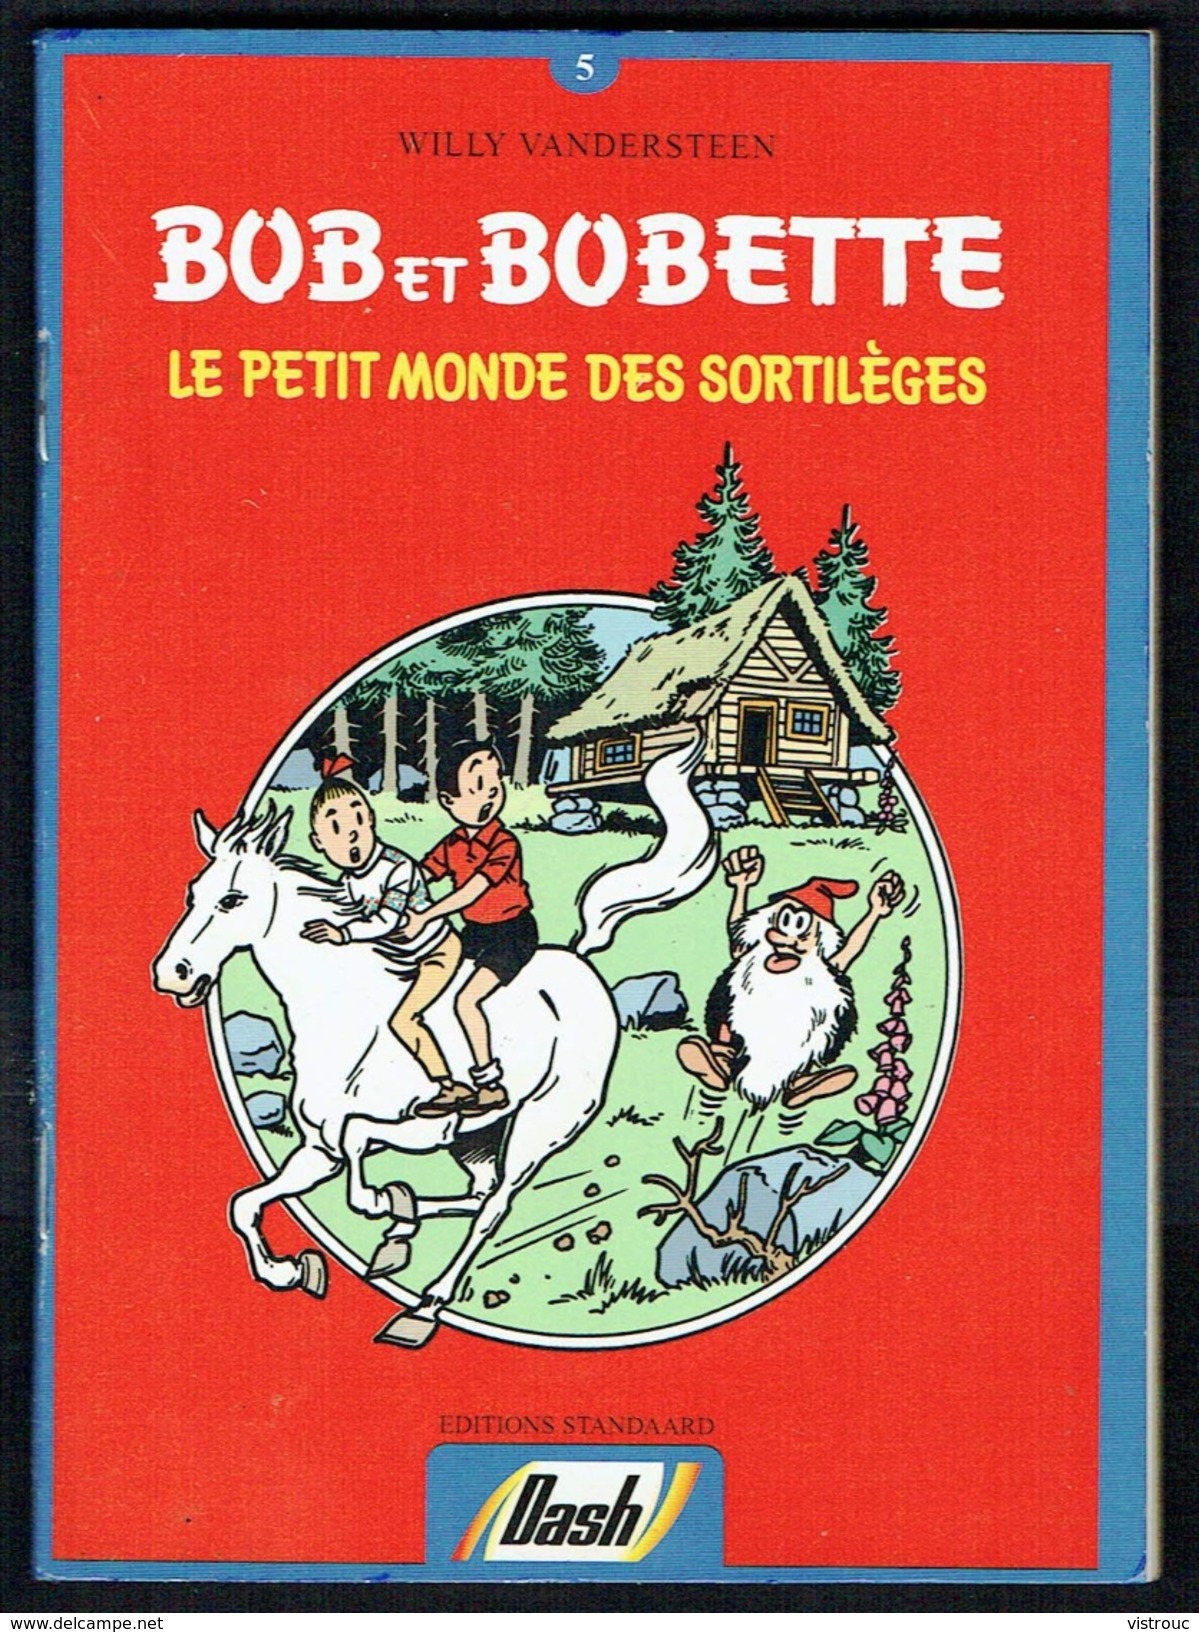 Mini-Bd Publicitaire "DASH" - Willy Vandersteen - Bob Et Bobette  N° 5 - " Le Petit Monde Des Sortilèges " FR/NL. - Suske En Wiske